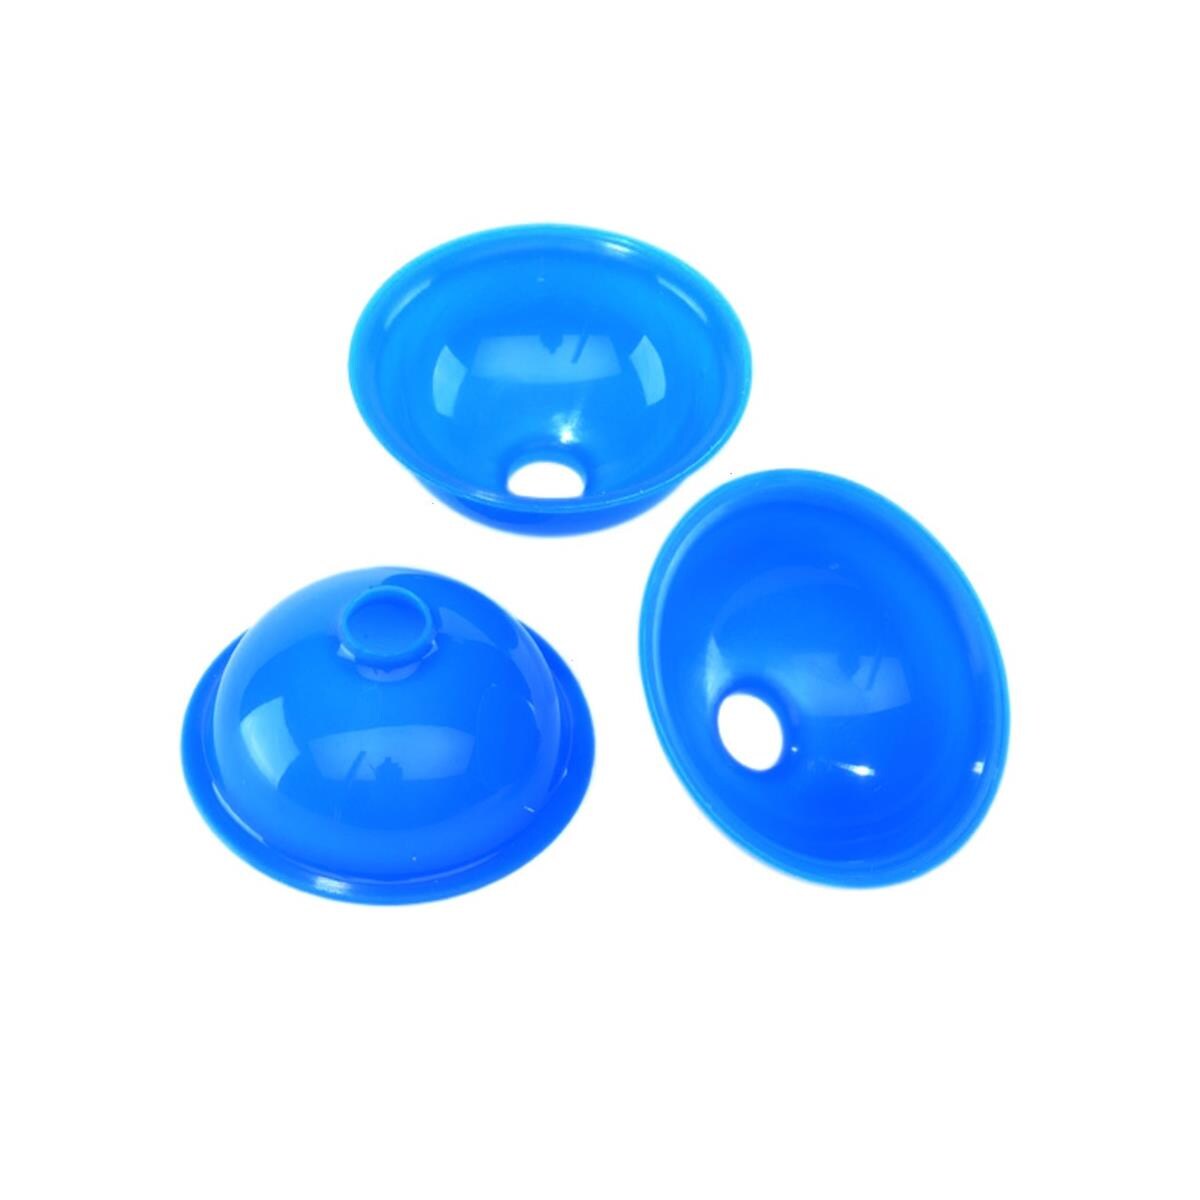 Cnes de coule BEGO - La bote de 100 cnes universels bleus